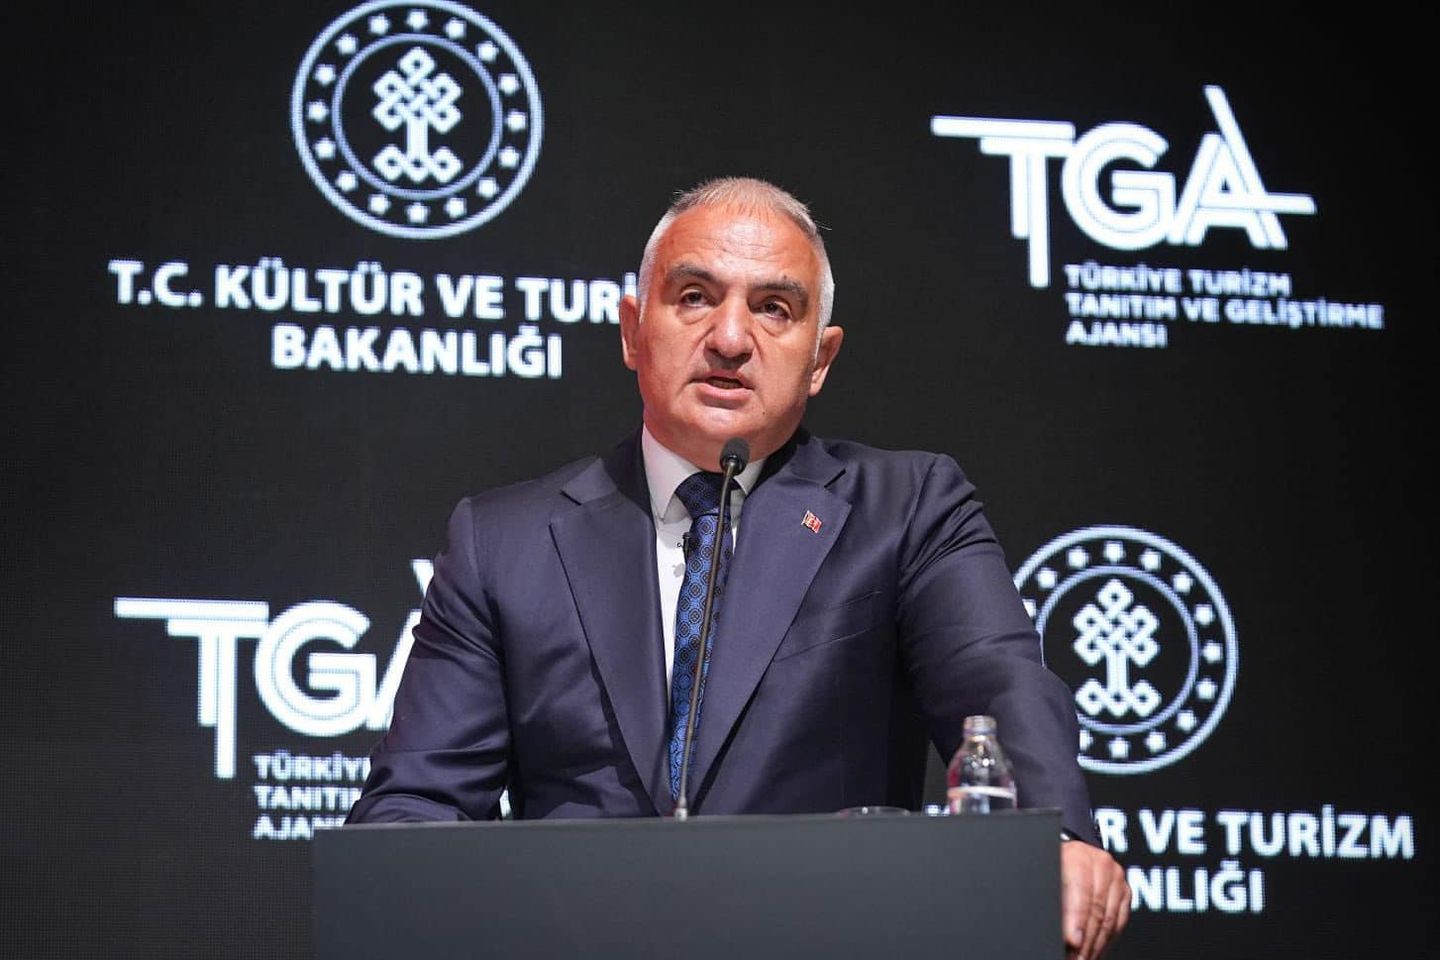 Kültür ve Turizm Bakanı Mehmet Ersoy, Türkiye'nin Turizm Alanındaki Başarılarını Paylaştı